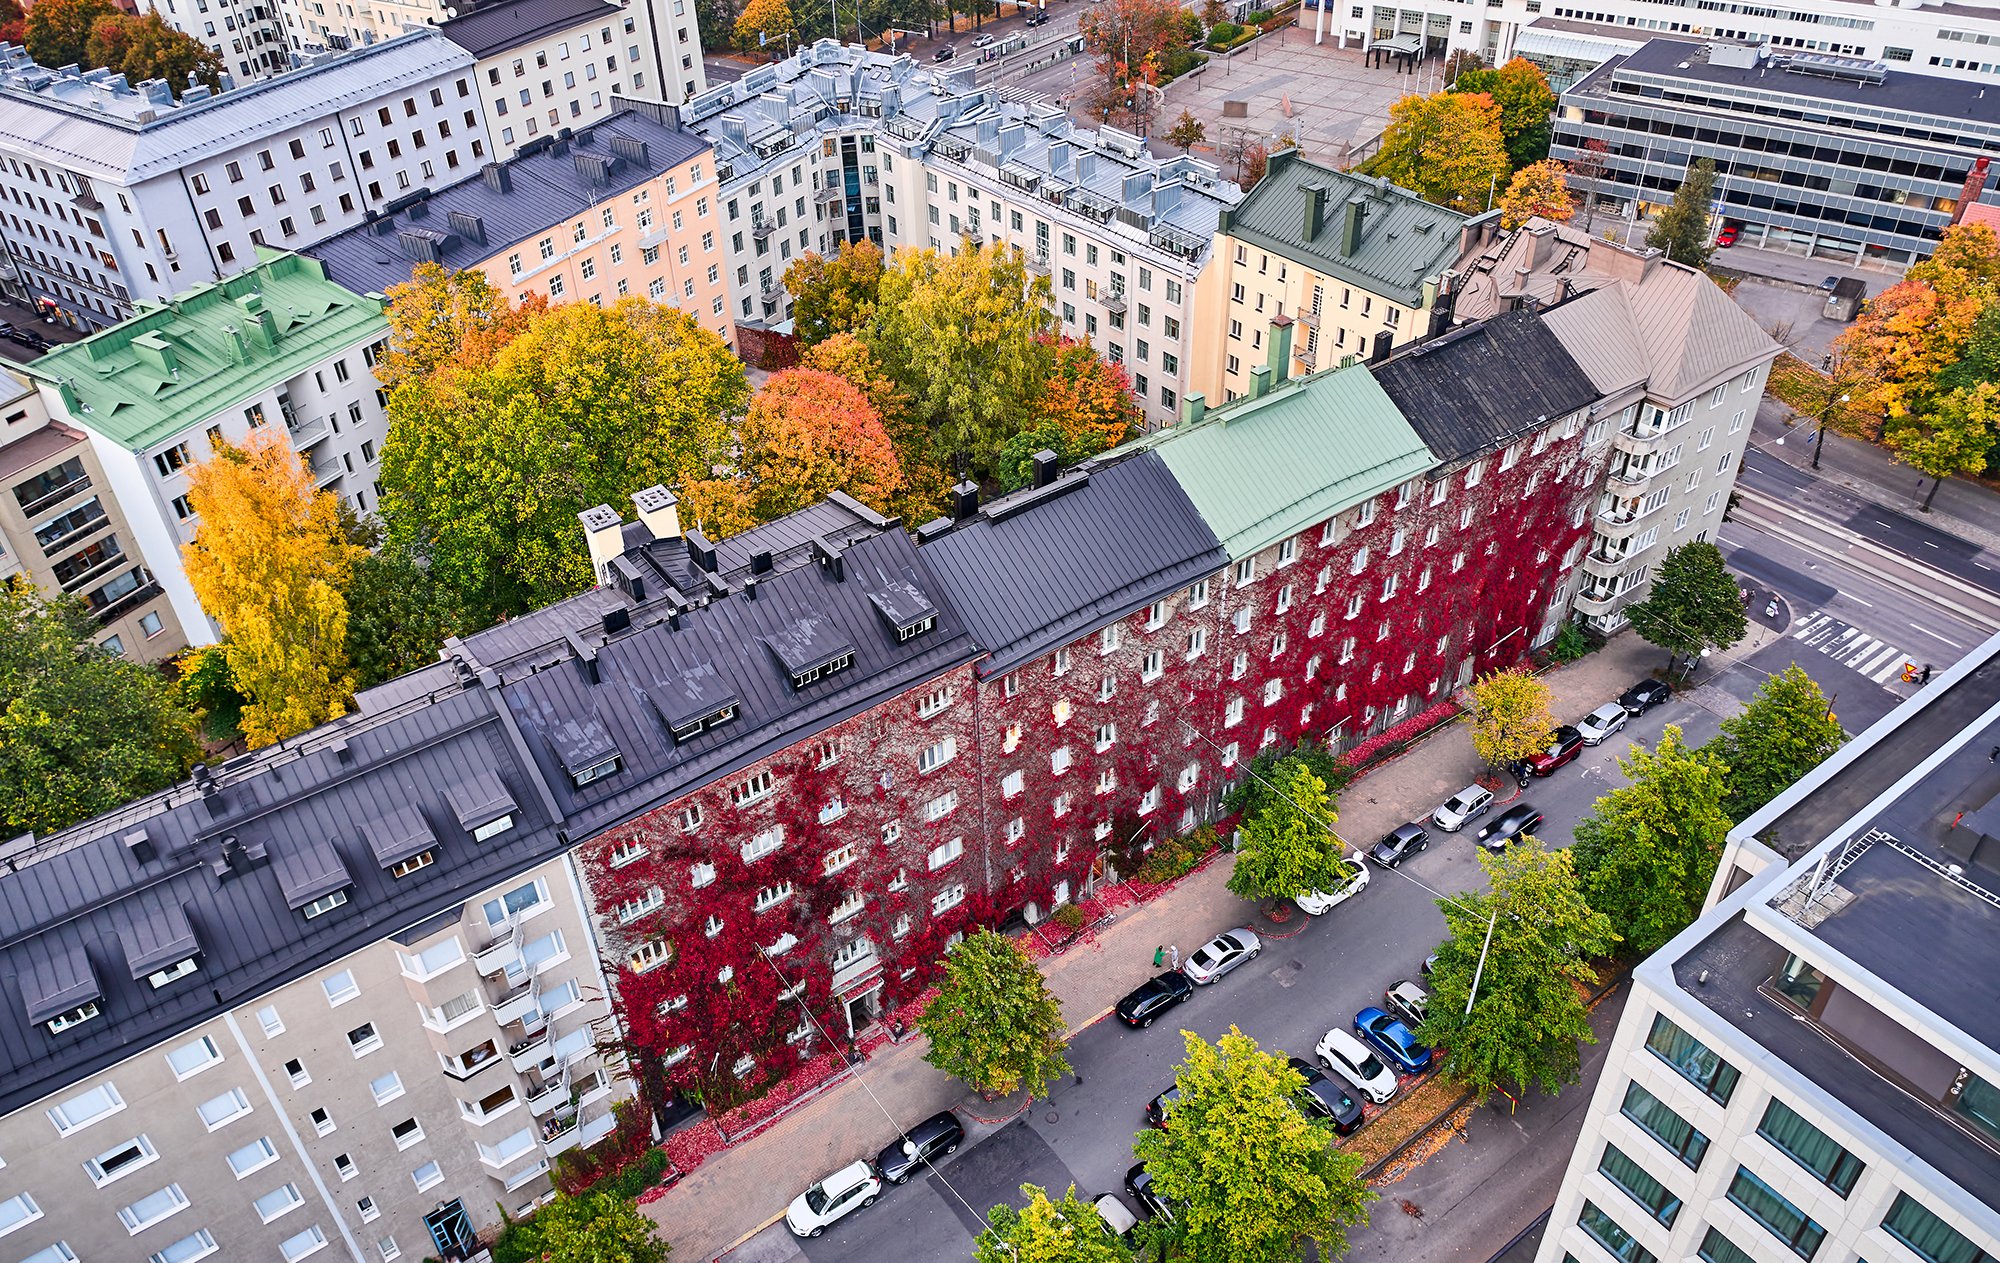 Ilmakuva Helsingin kaupungista, jossa näkyy eri värisiä kerrostaloja ja autoja sekä katuja. Kadut ova reunustettu vihreälehtisillä puilla ja osa talojen pihalla olevista puista ovat syksyn väreissä. Kuvan keskellä olevan talon seinustalla kasvaa tummanpunaisen värinen villiviini köynnös.